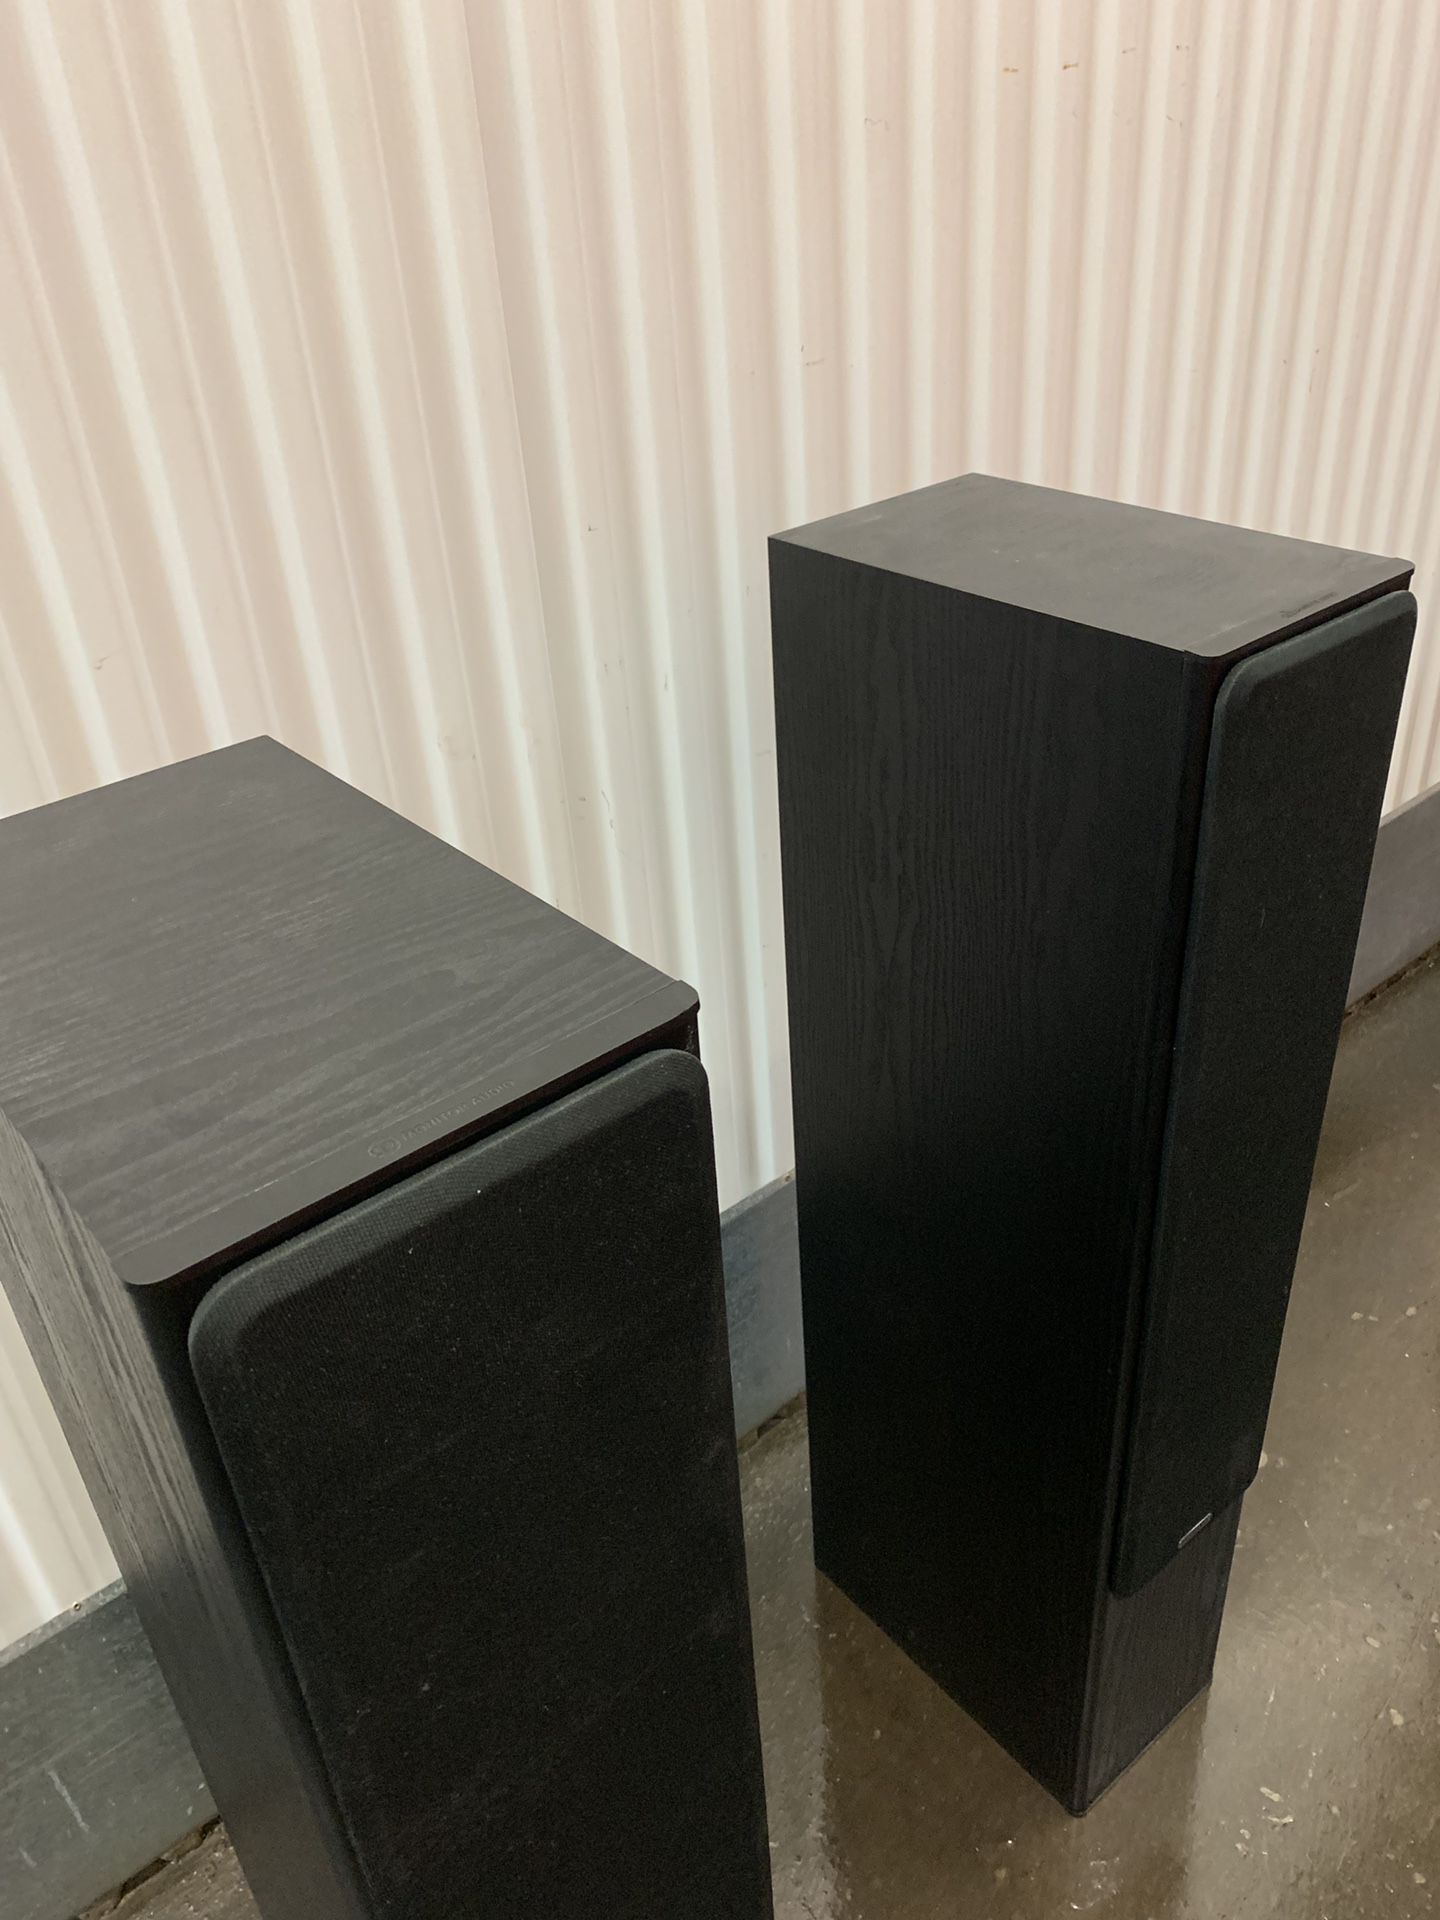 M-Audio Bronze 6 Passive Speakers